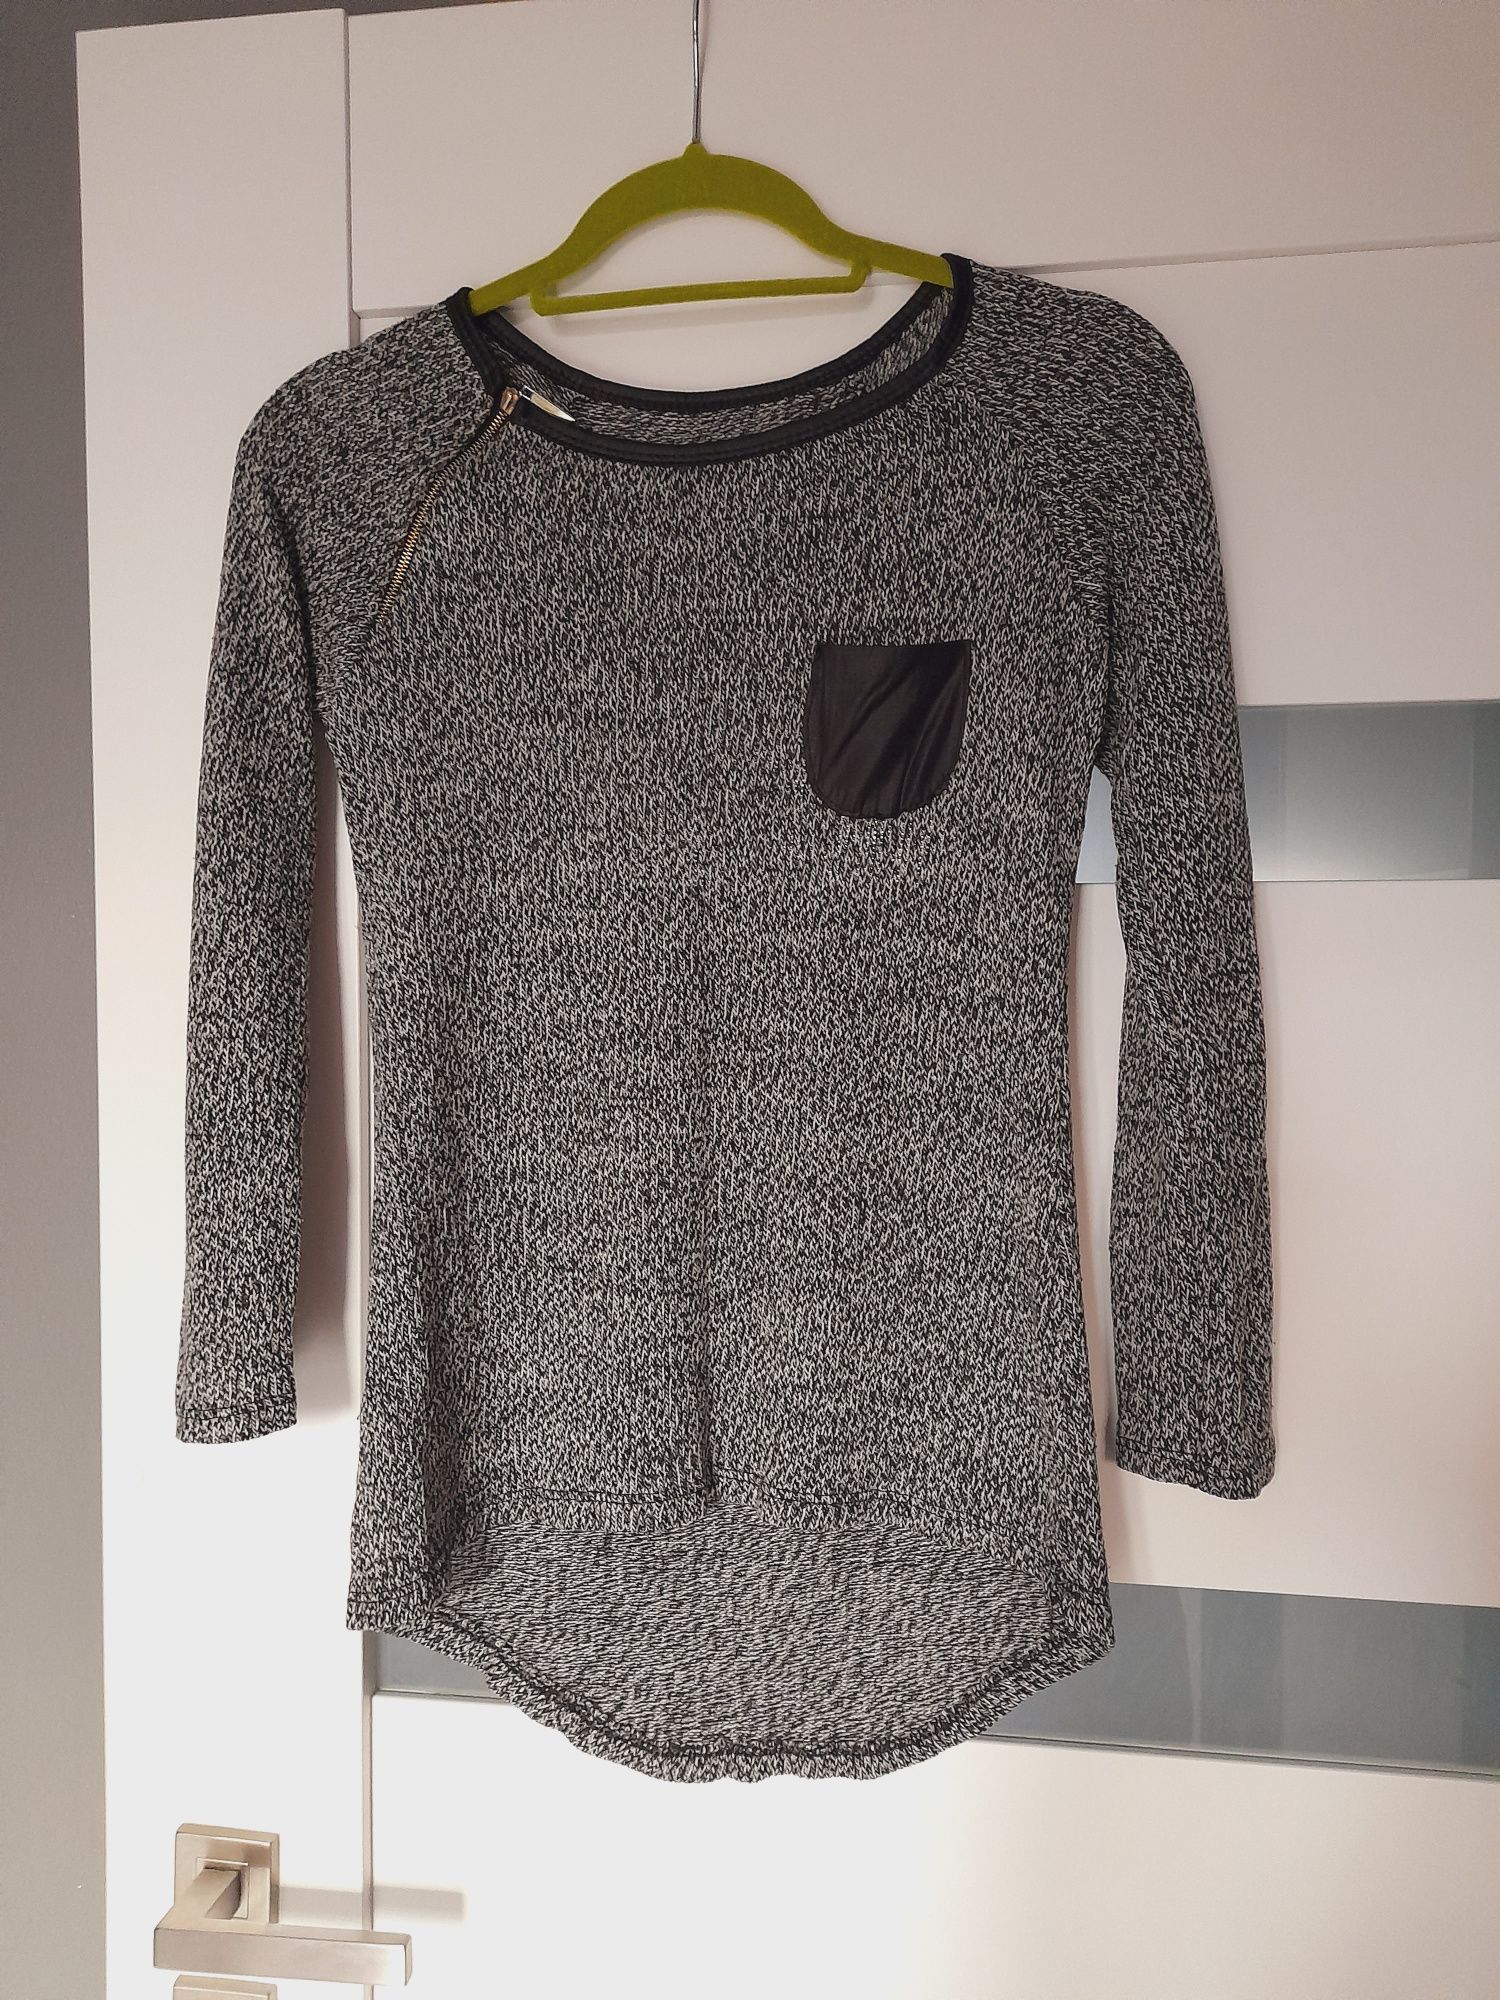 Sweterek sweter swetr Sweater 36-38 S M szary Asymetryczny dłuższy